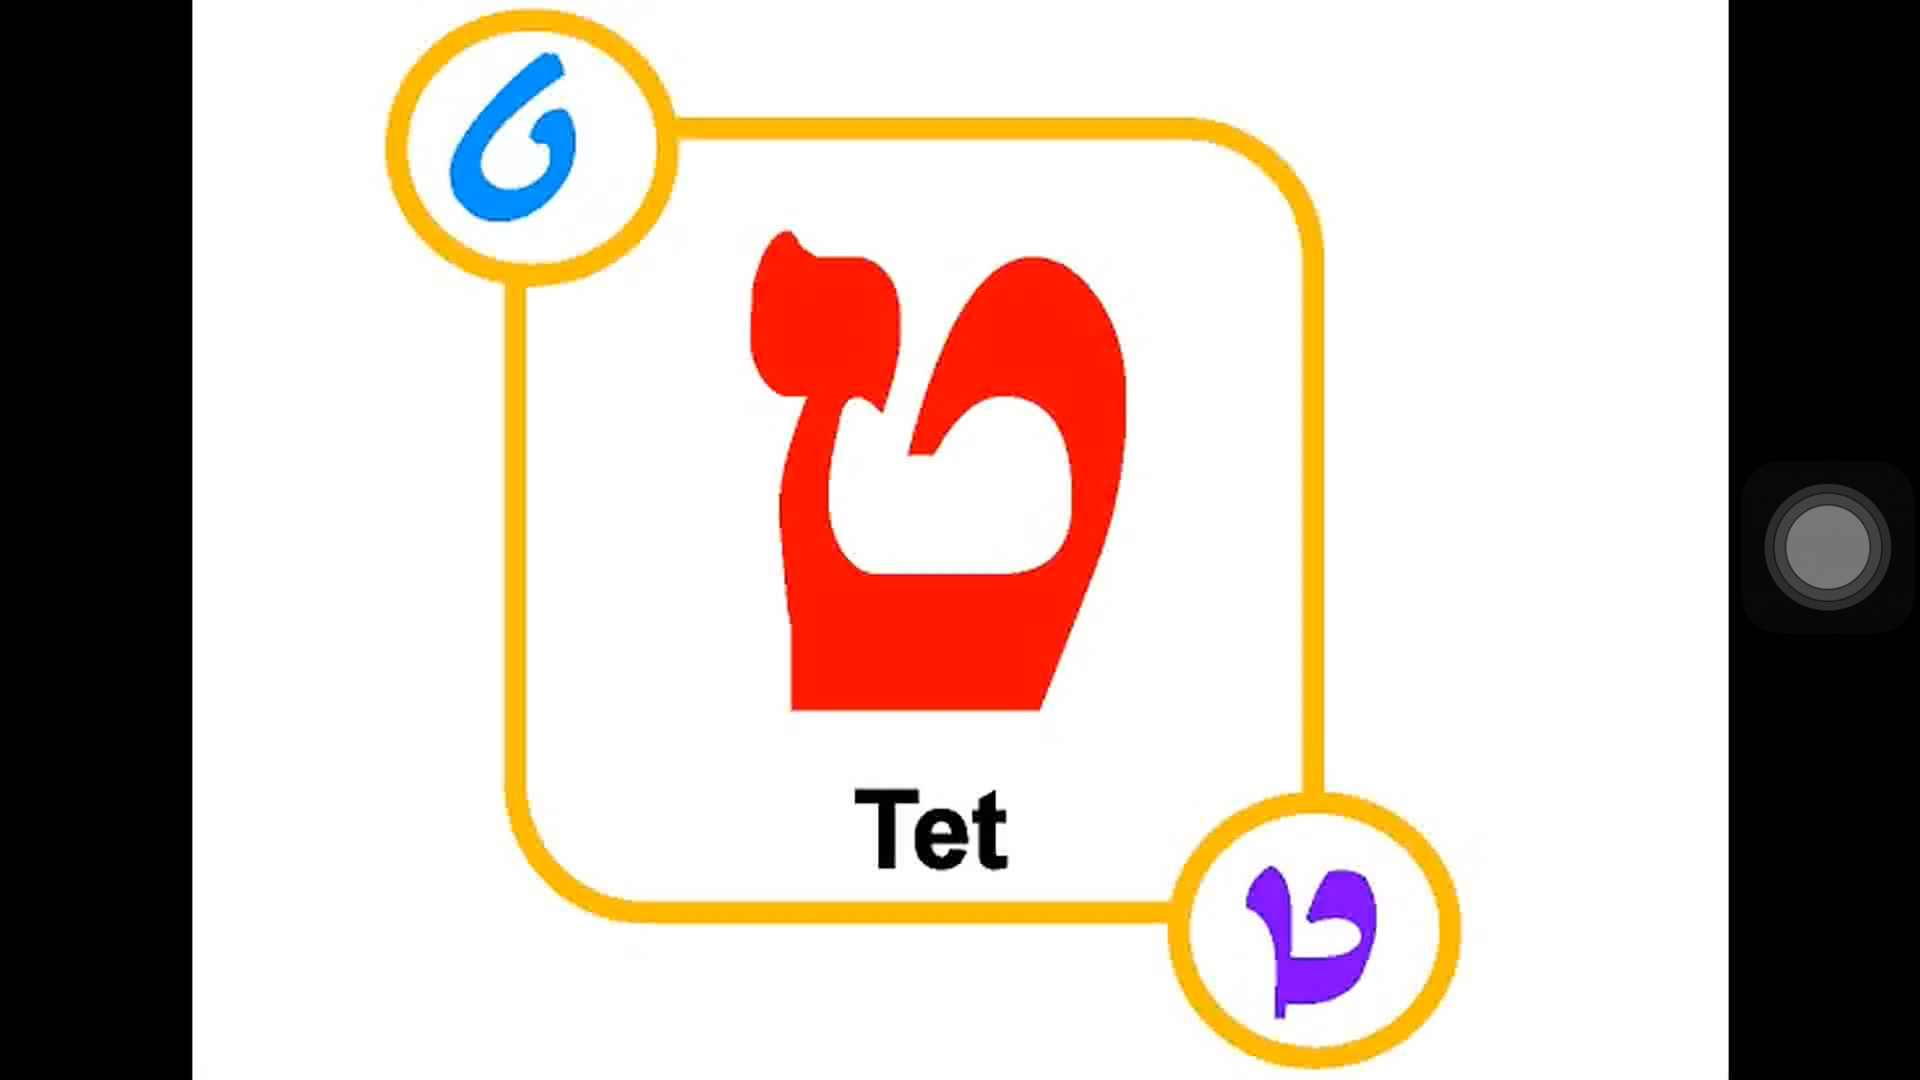 希伯来语字母的动画图片